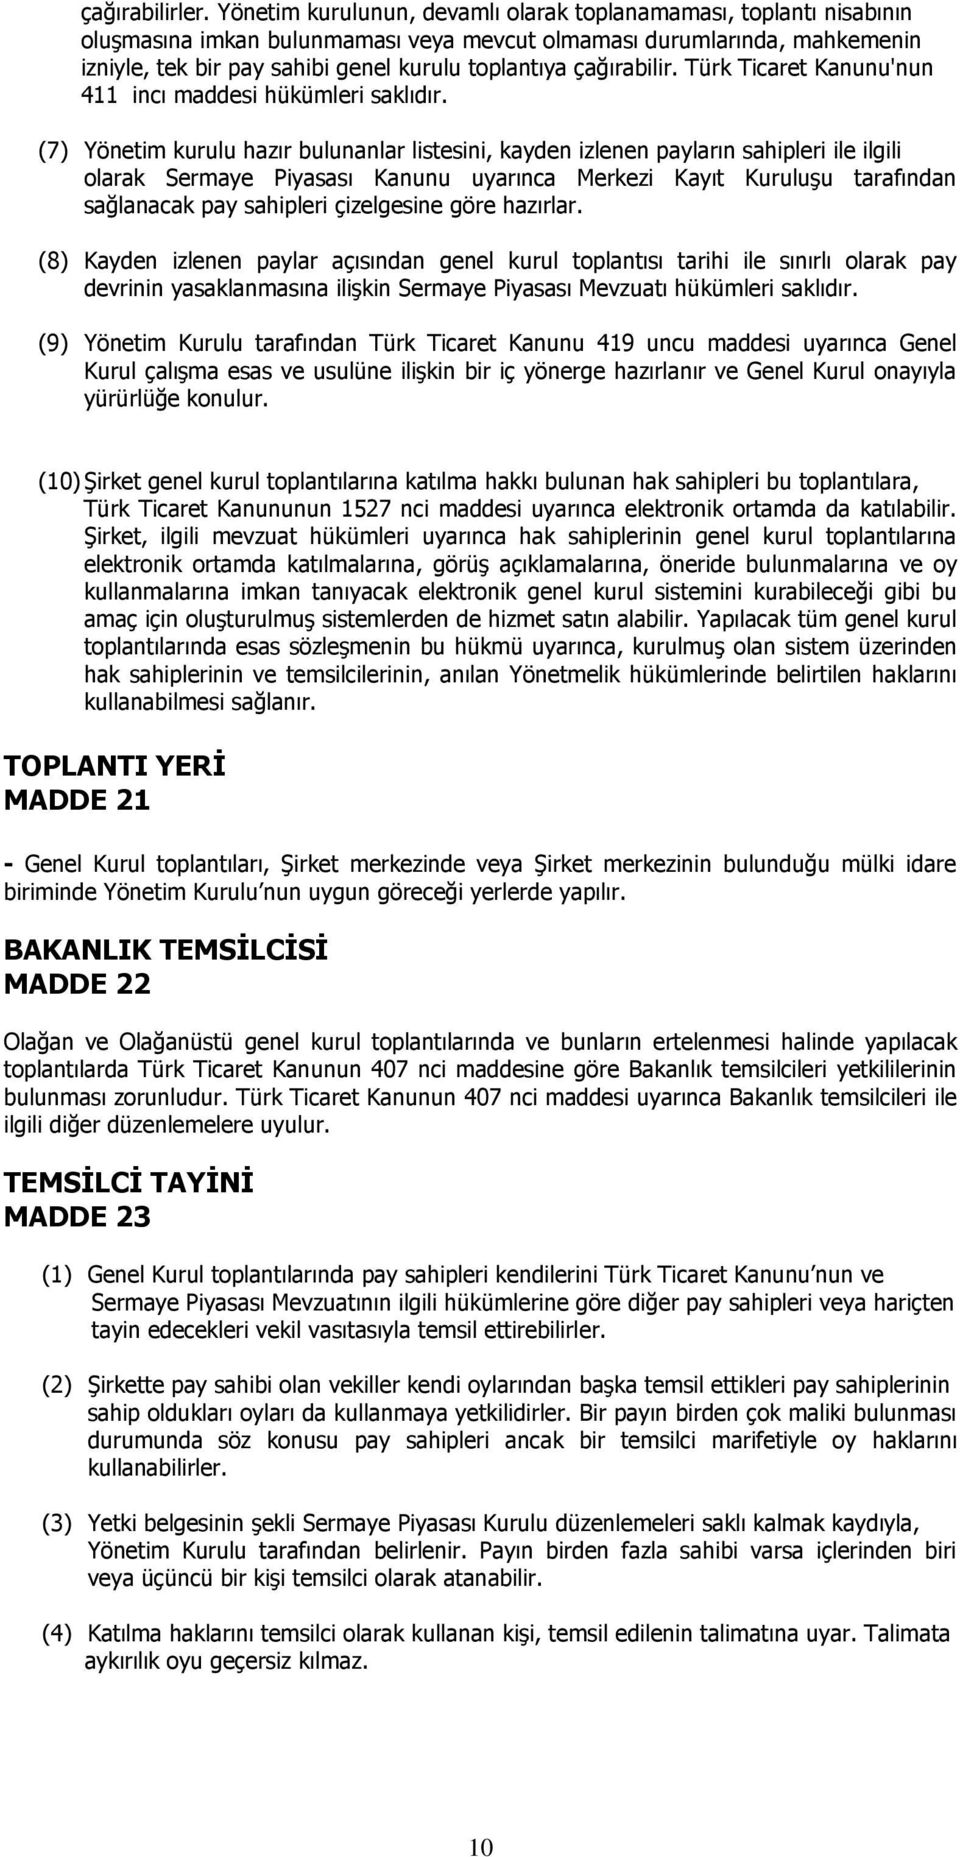 çağırabilir. Türk Ticaret Kanunu'nun 411 incı maddesi hükümleri saklıdır.